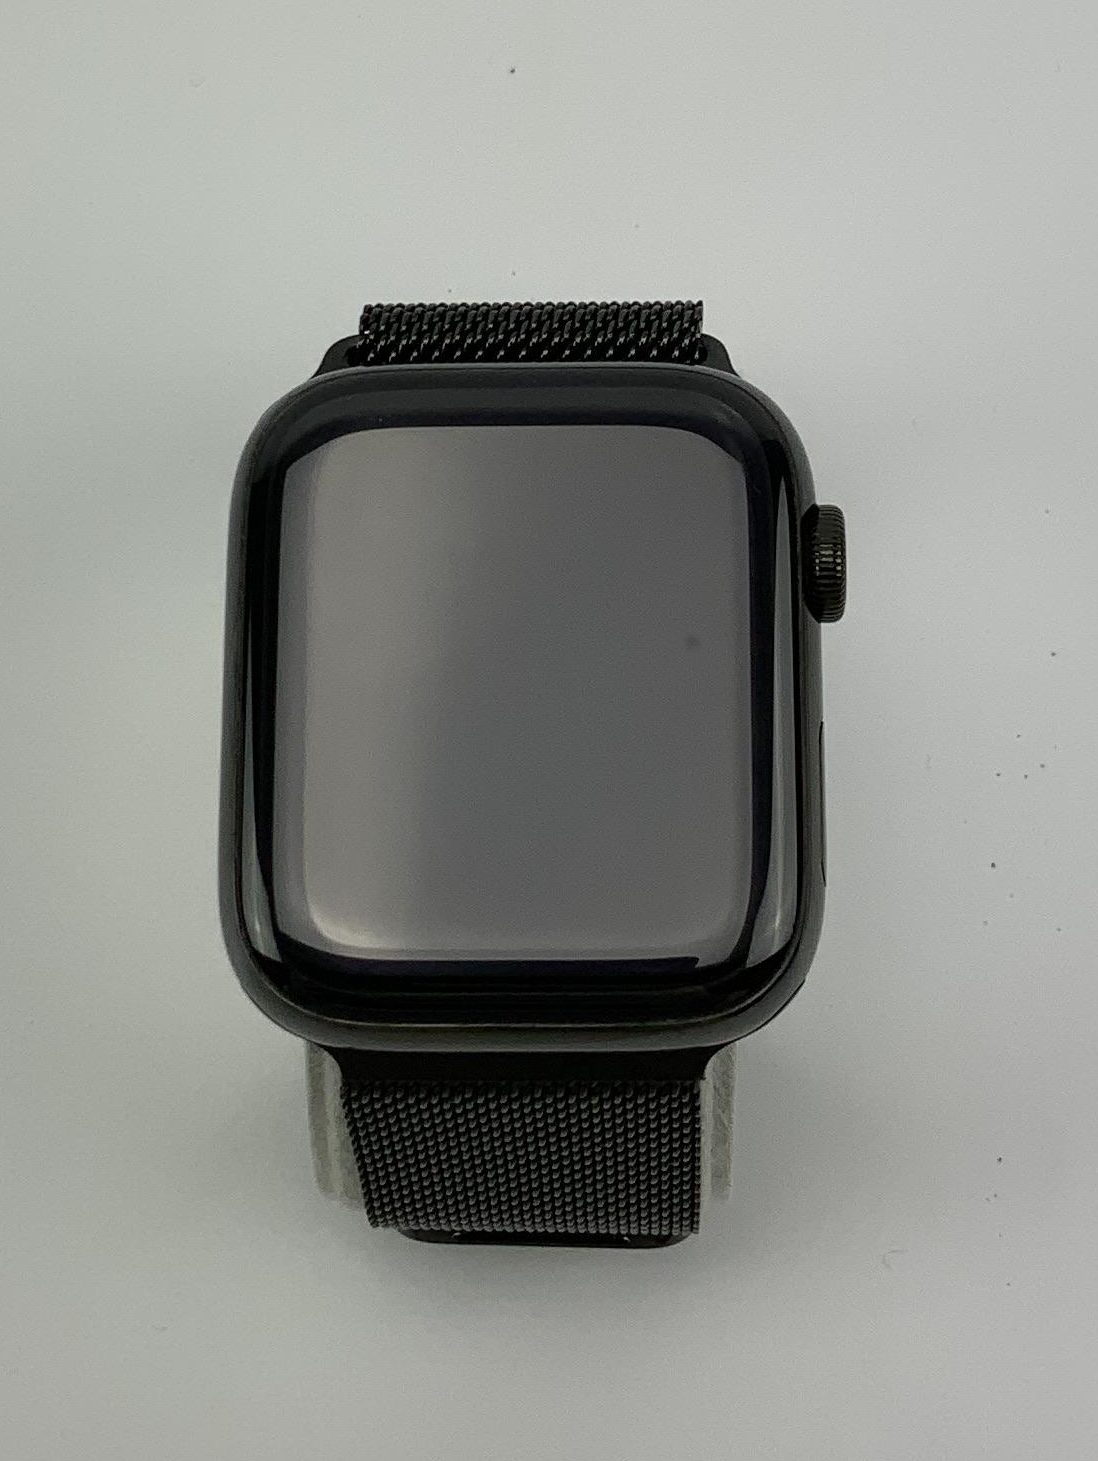 Watch Series 4 Steel Cellular (44mm), Space Black, Space Black Milanese Loop, imagen 1